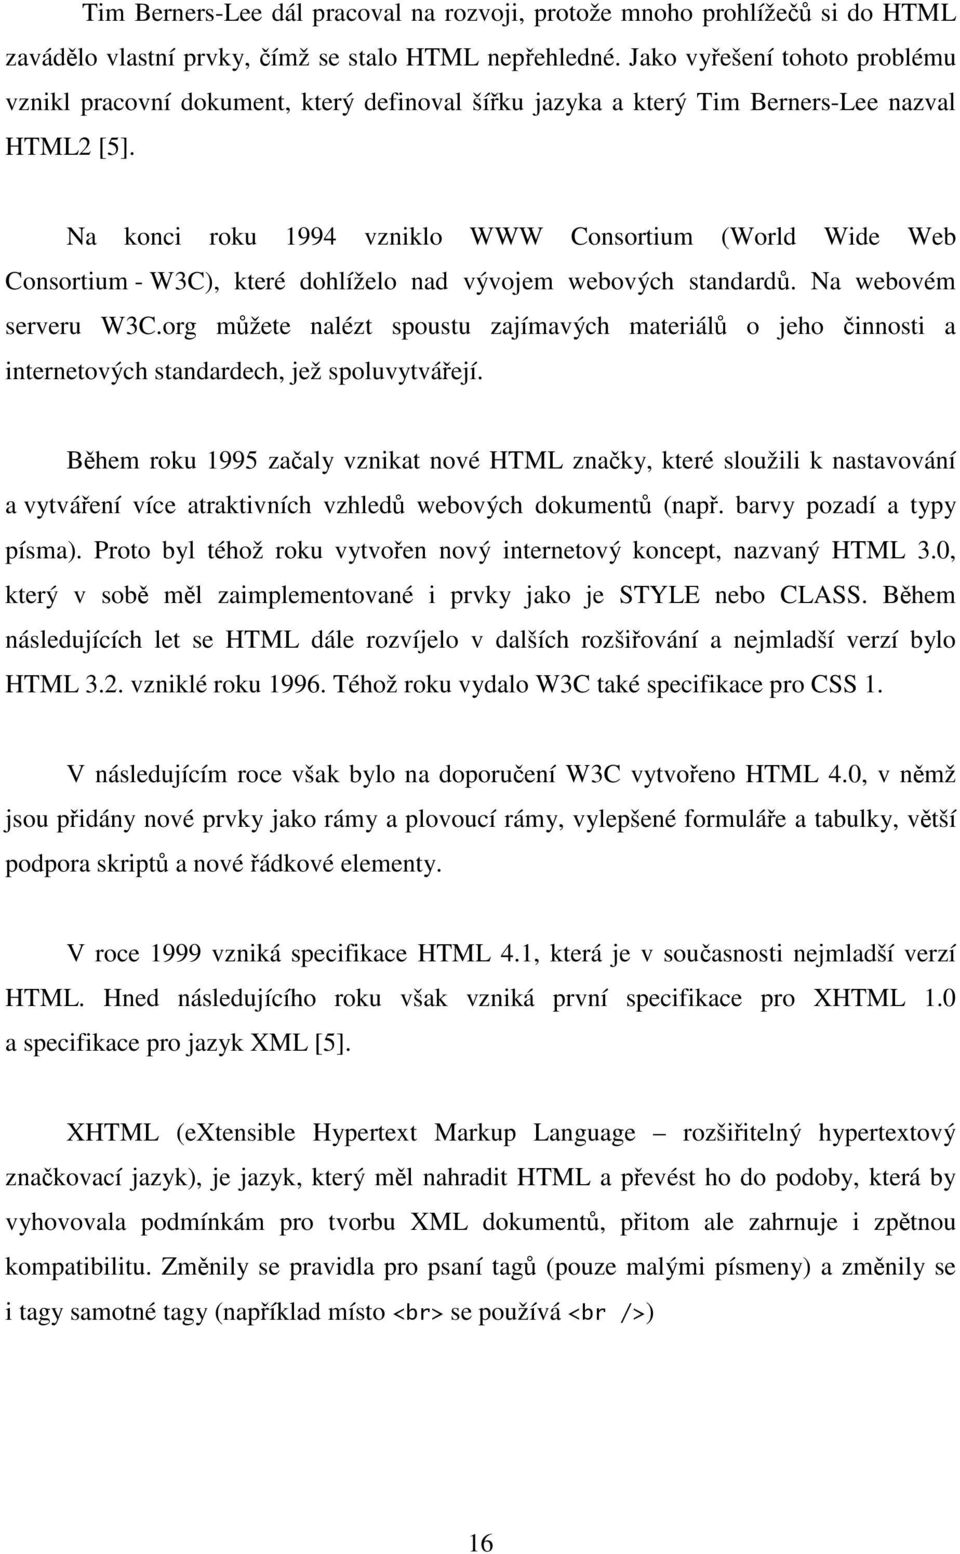 Na konci roku 1994 vzniklo WWW Consortium (World Wide Web Consortium - W3C), které dohlíželo nad vývojem webových standardů. Na webovém serveru W3C.